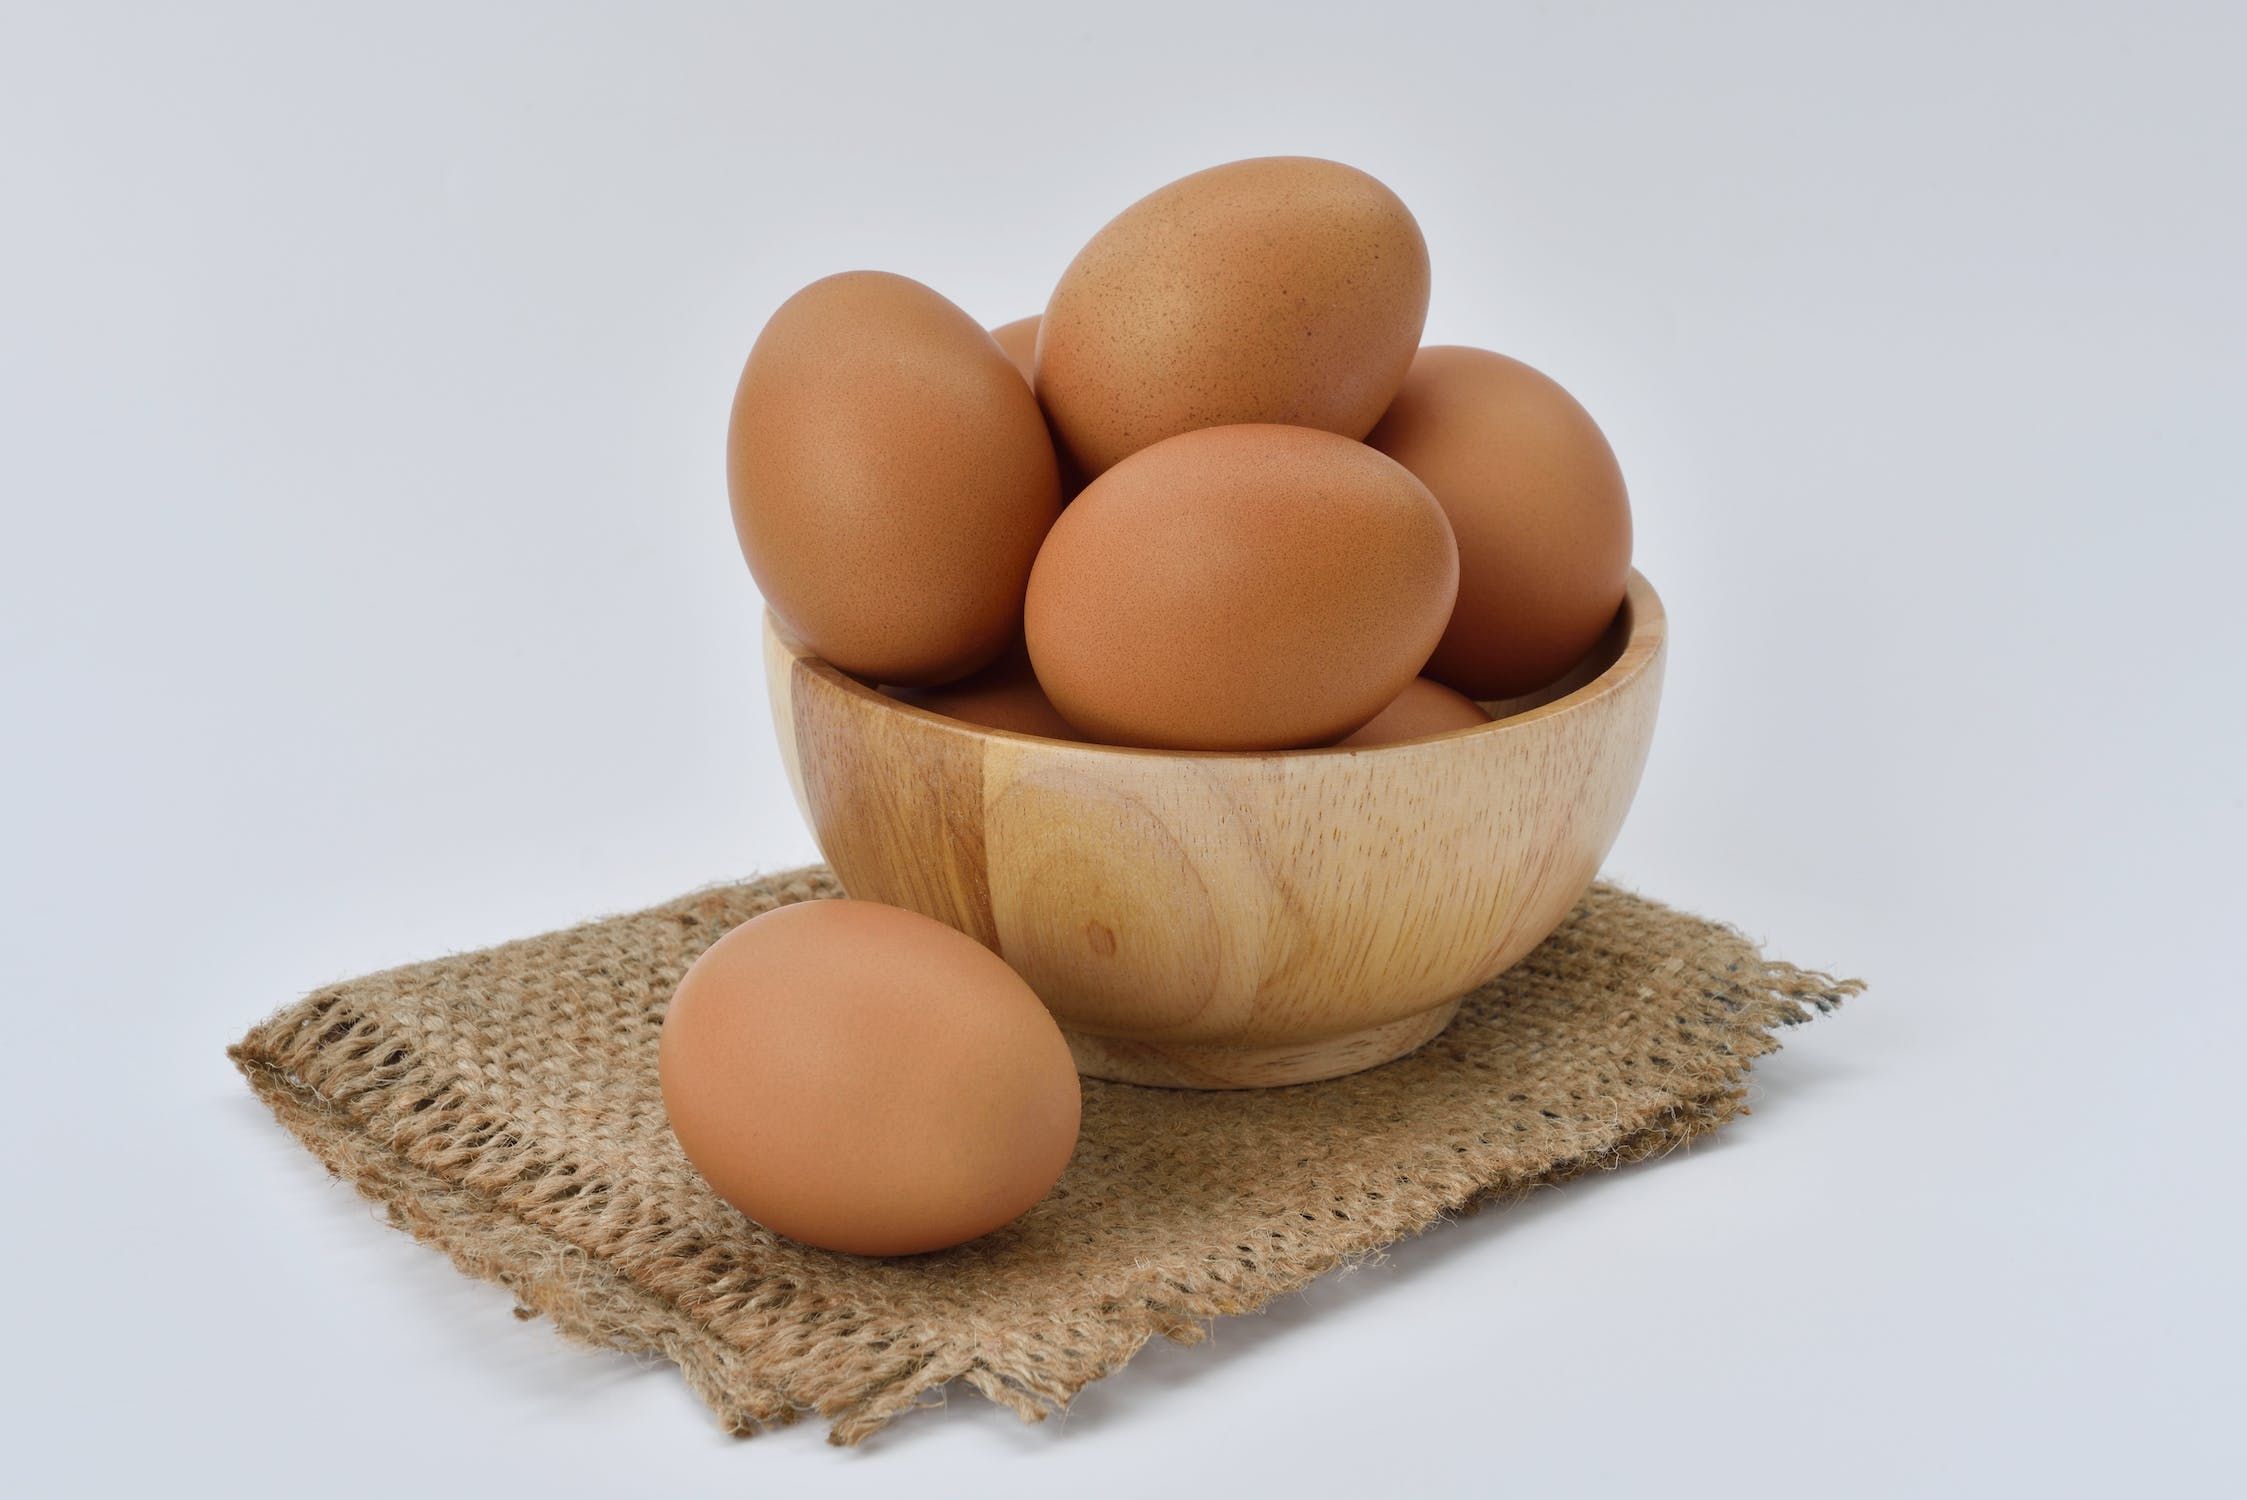 Telur Memiliki Kandungan Protein Hewani yang Baik untuk Cegah Stunting Pada Anak